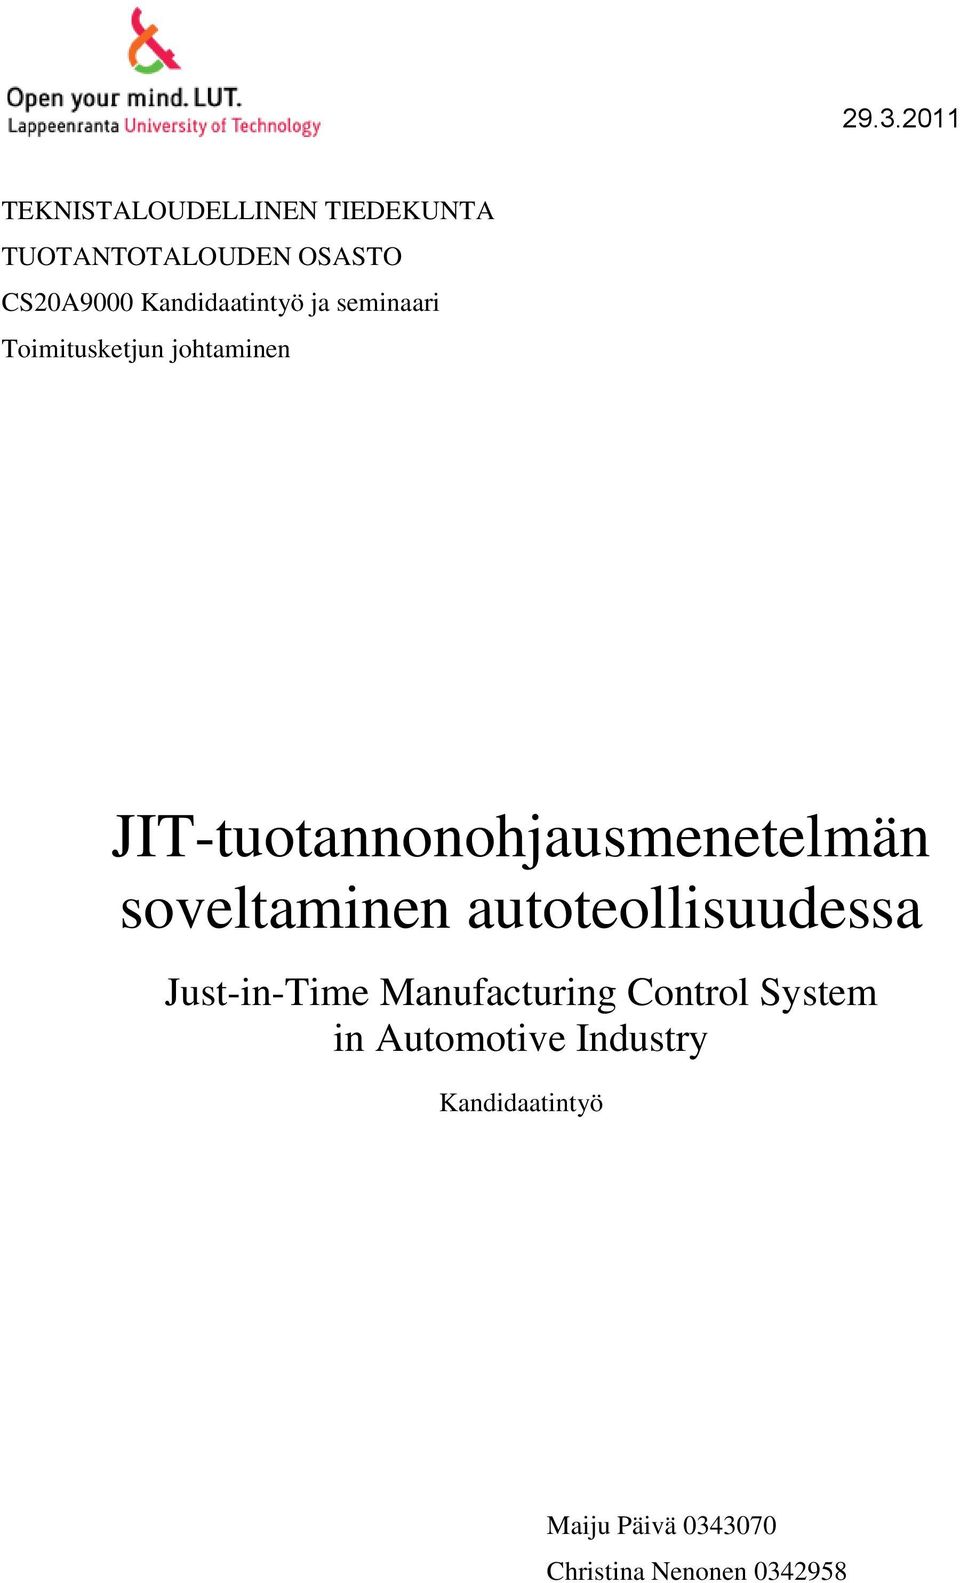 JIT-tuotannonohjausmenetelmän soveltaminen autoteollisuudessa Just-in-Time